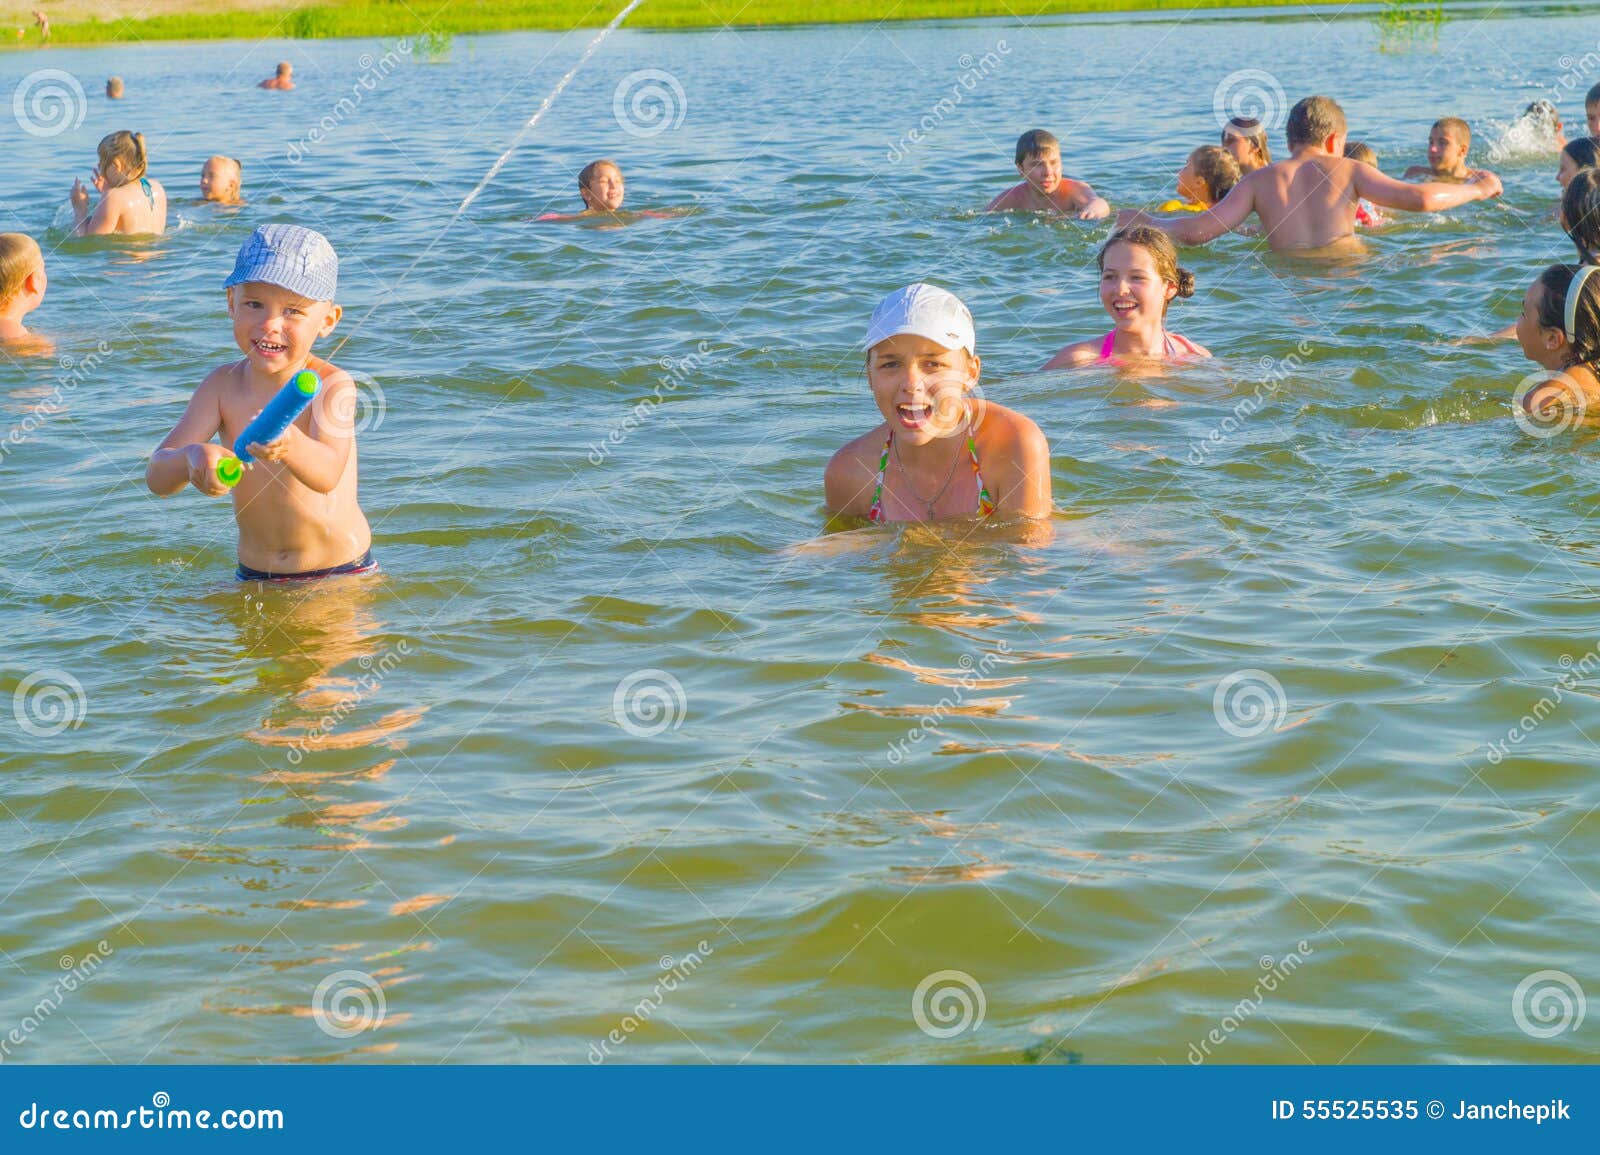 как купаться в бани голыми с детьми фото 119